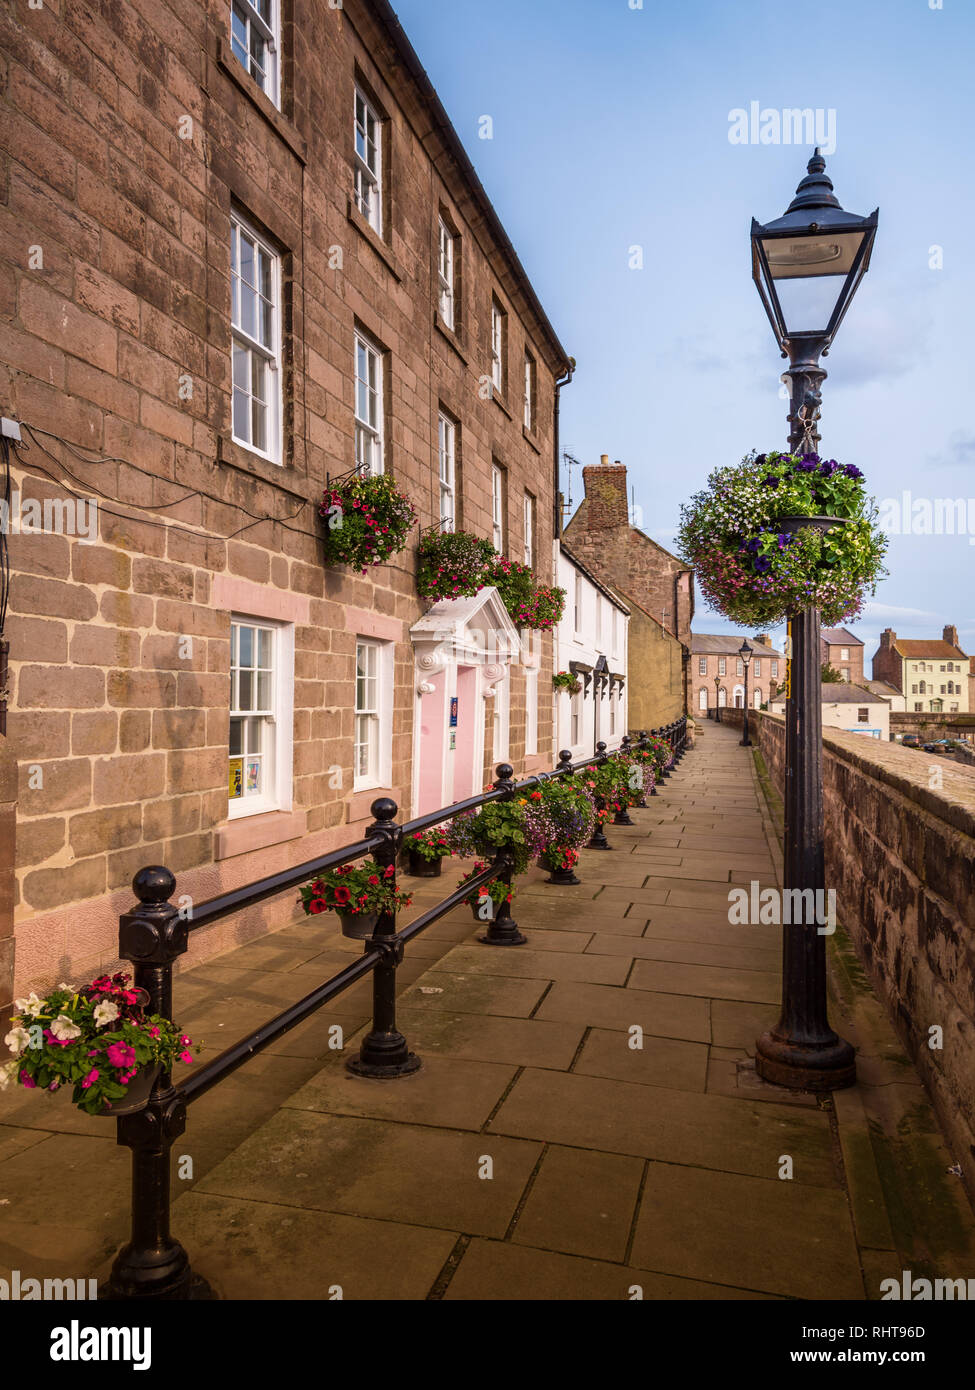 Quay walls, Berwick upon Tweed, Northumberland, UK Stock Photo